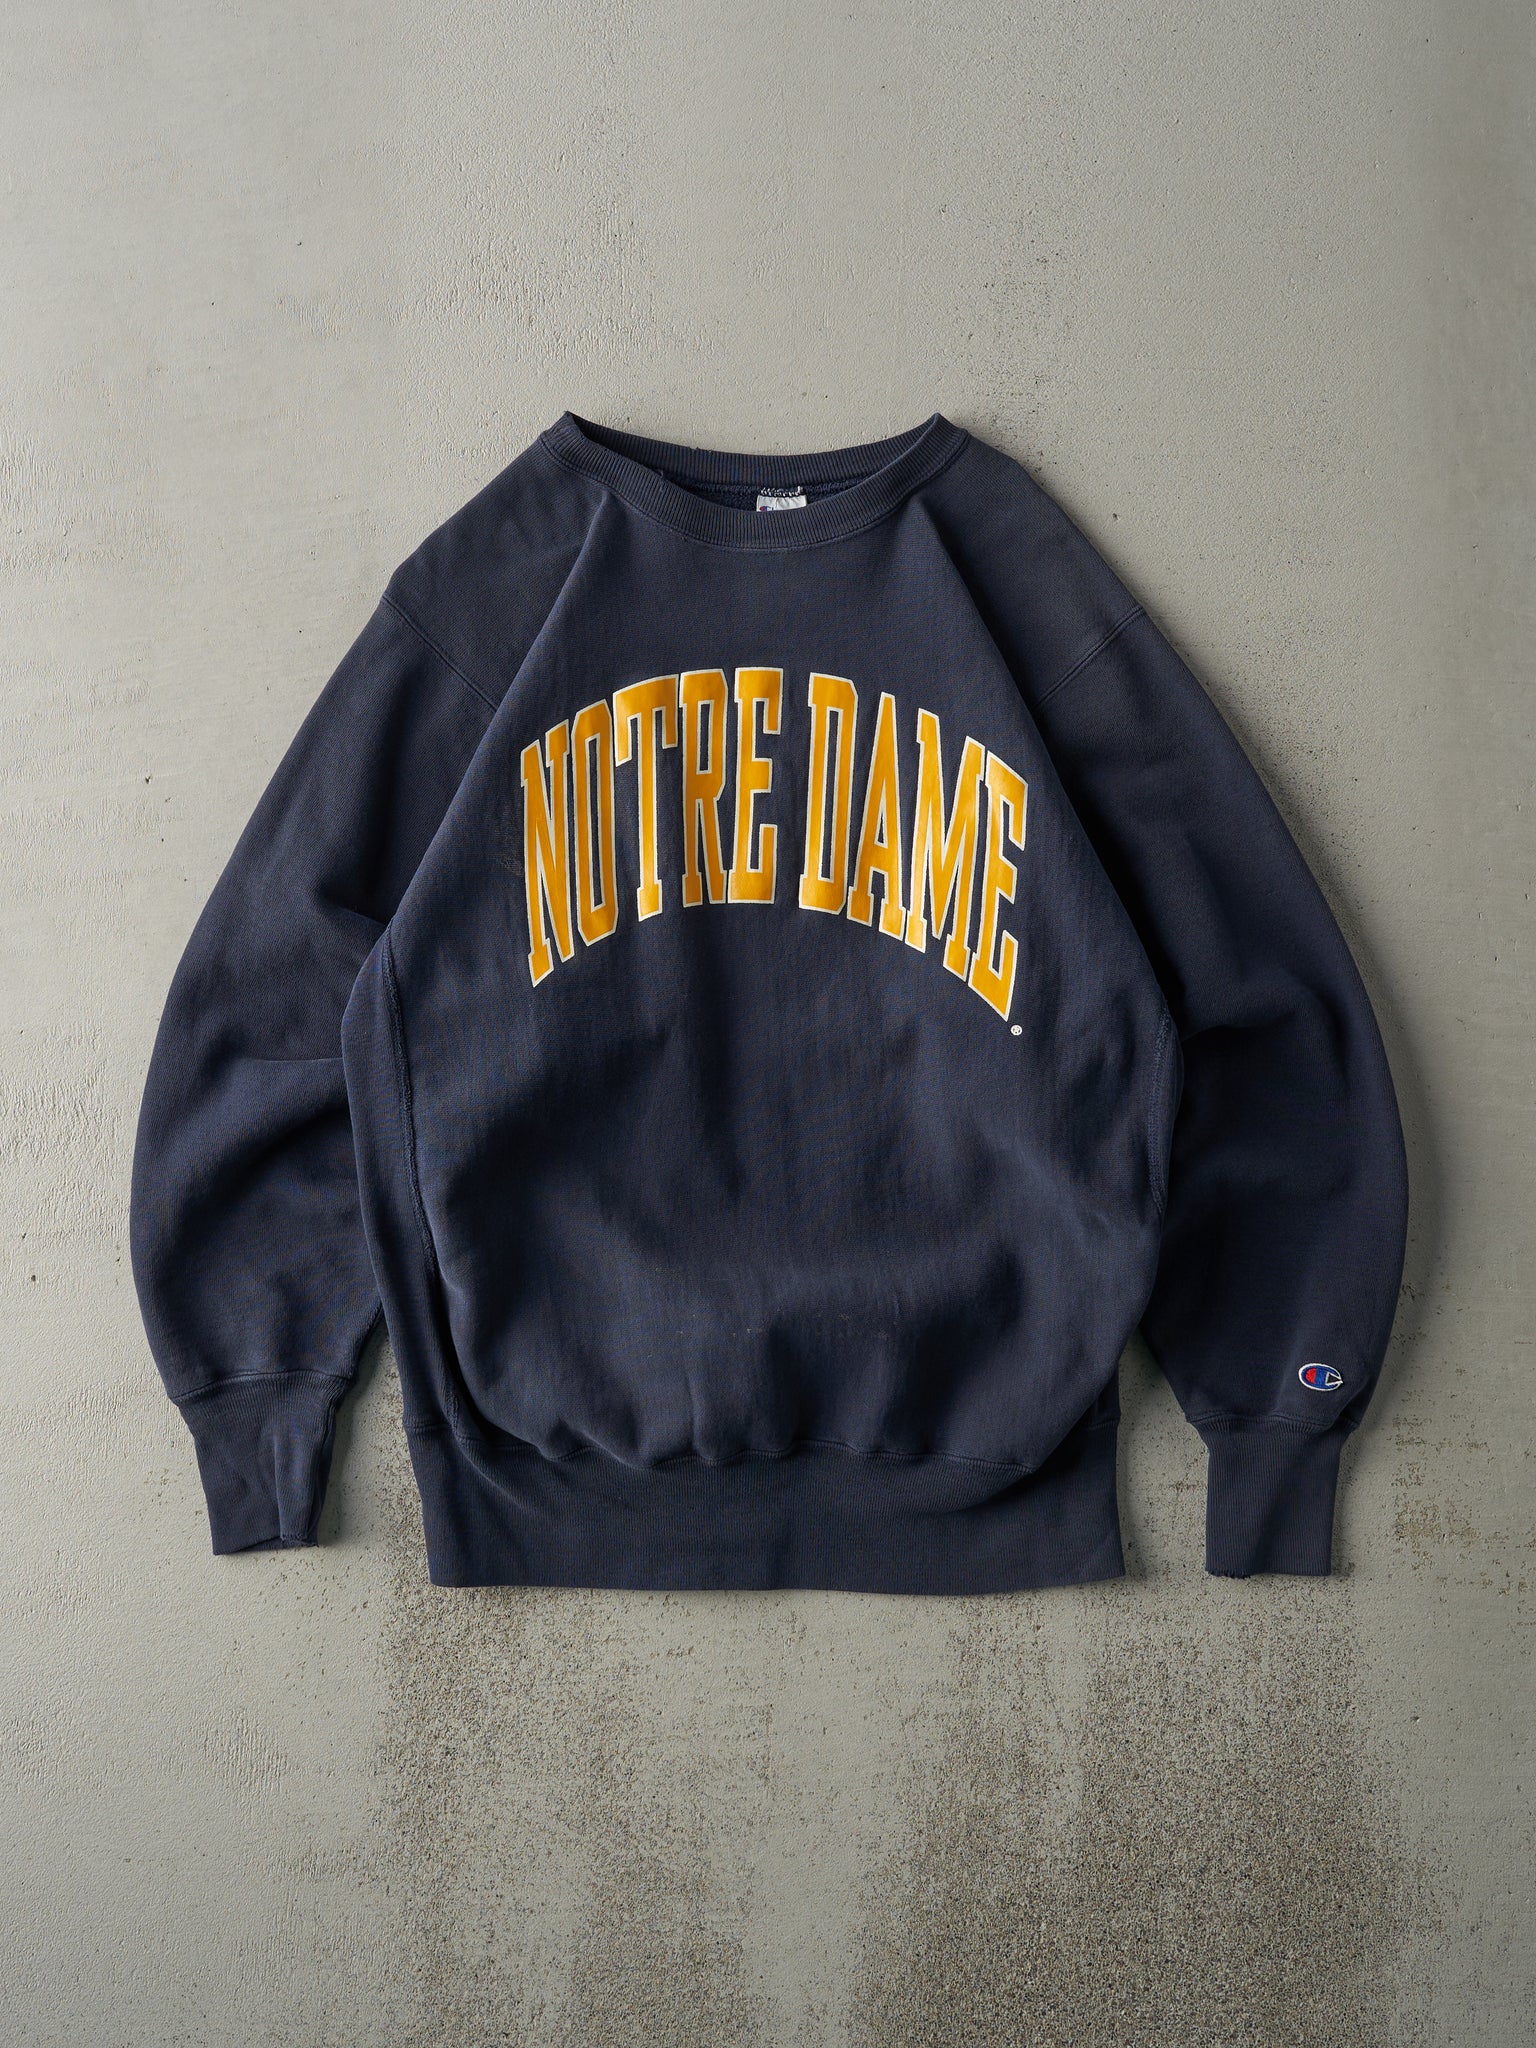 Vintage 90s Navy Notre Dame Champion Reverse Weave Crewneck (M)